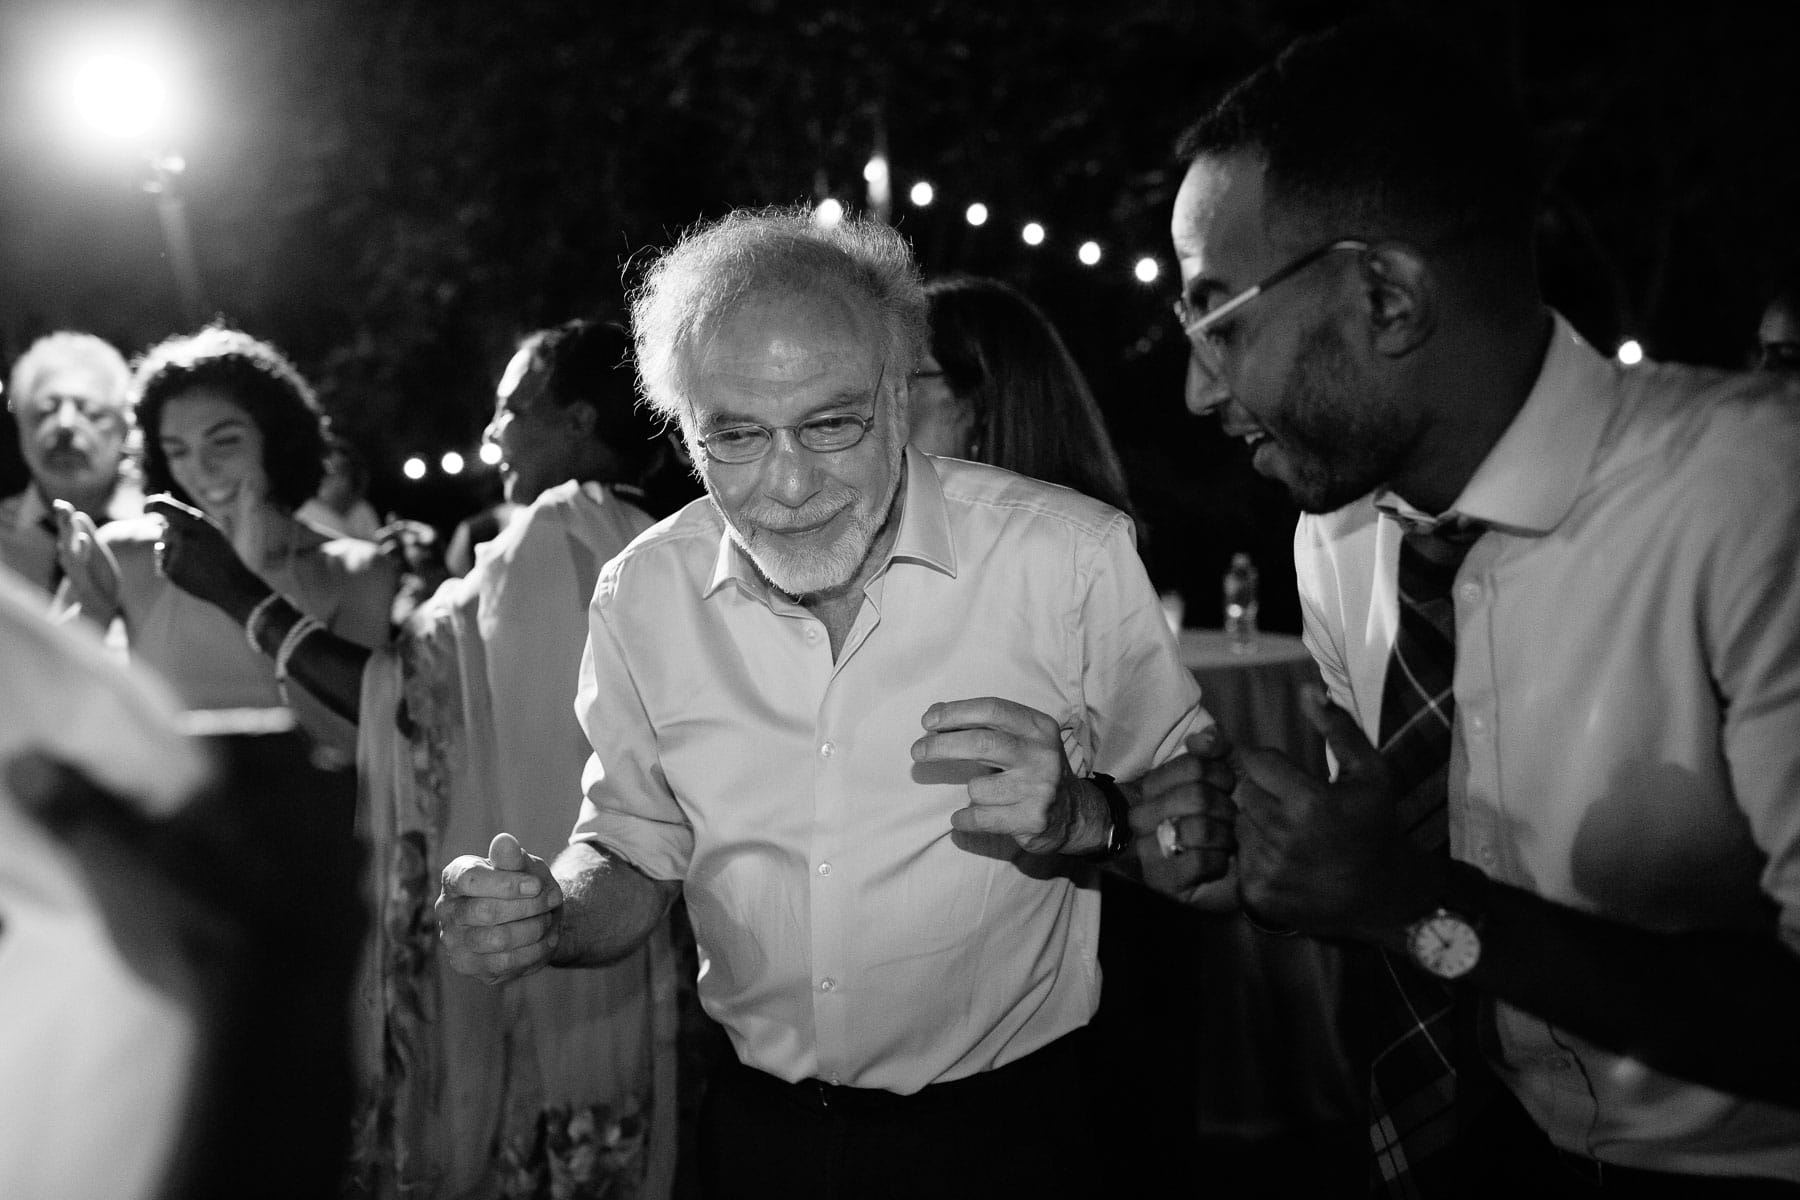 dancing at a backyard wedding  | Kelly Benvenuto Photography